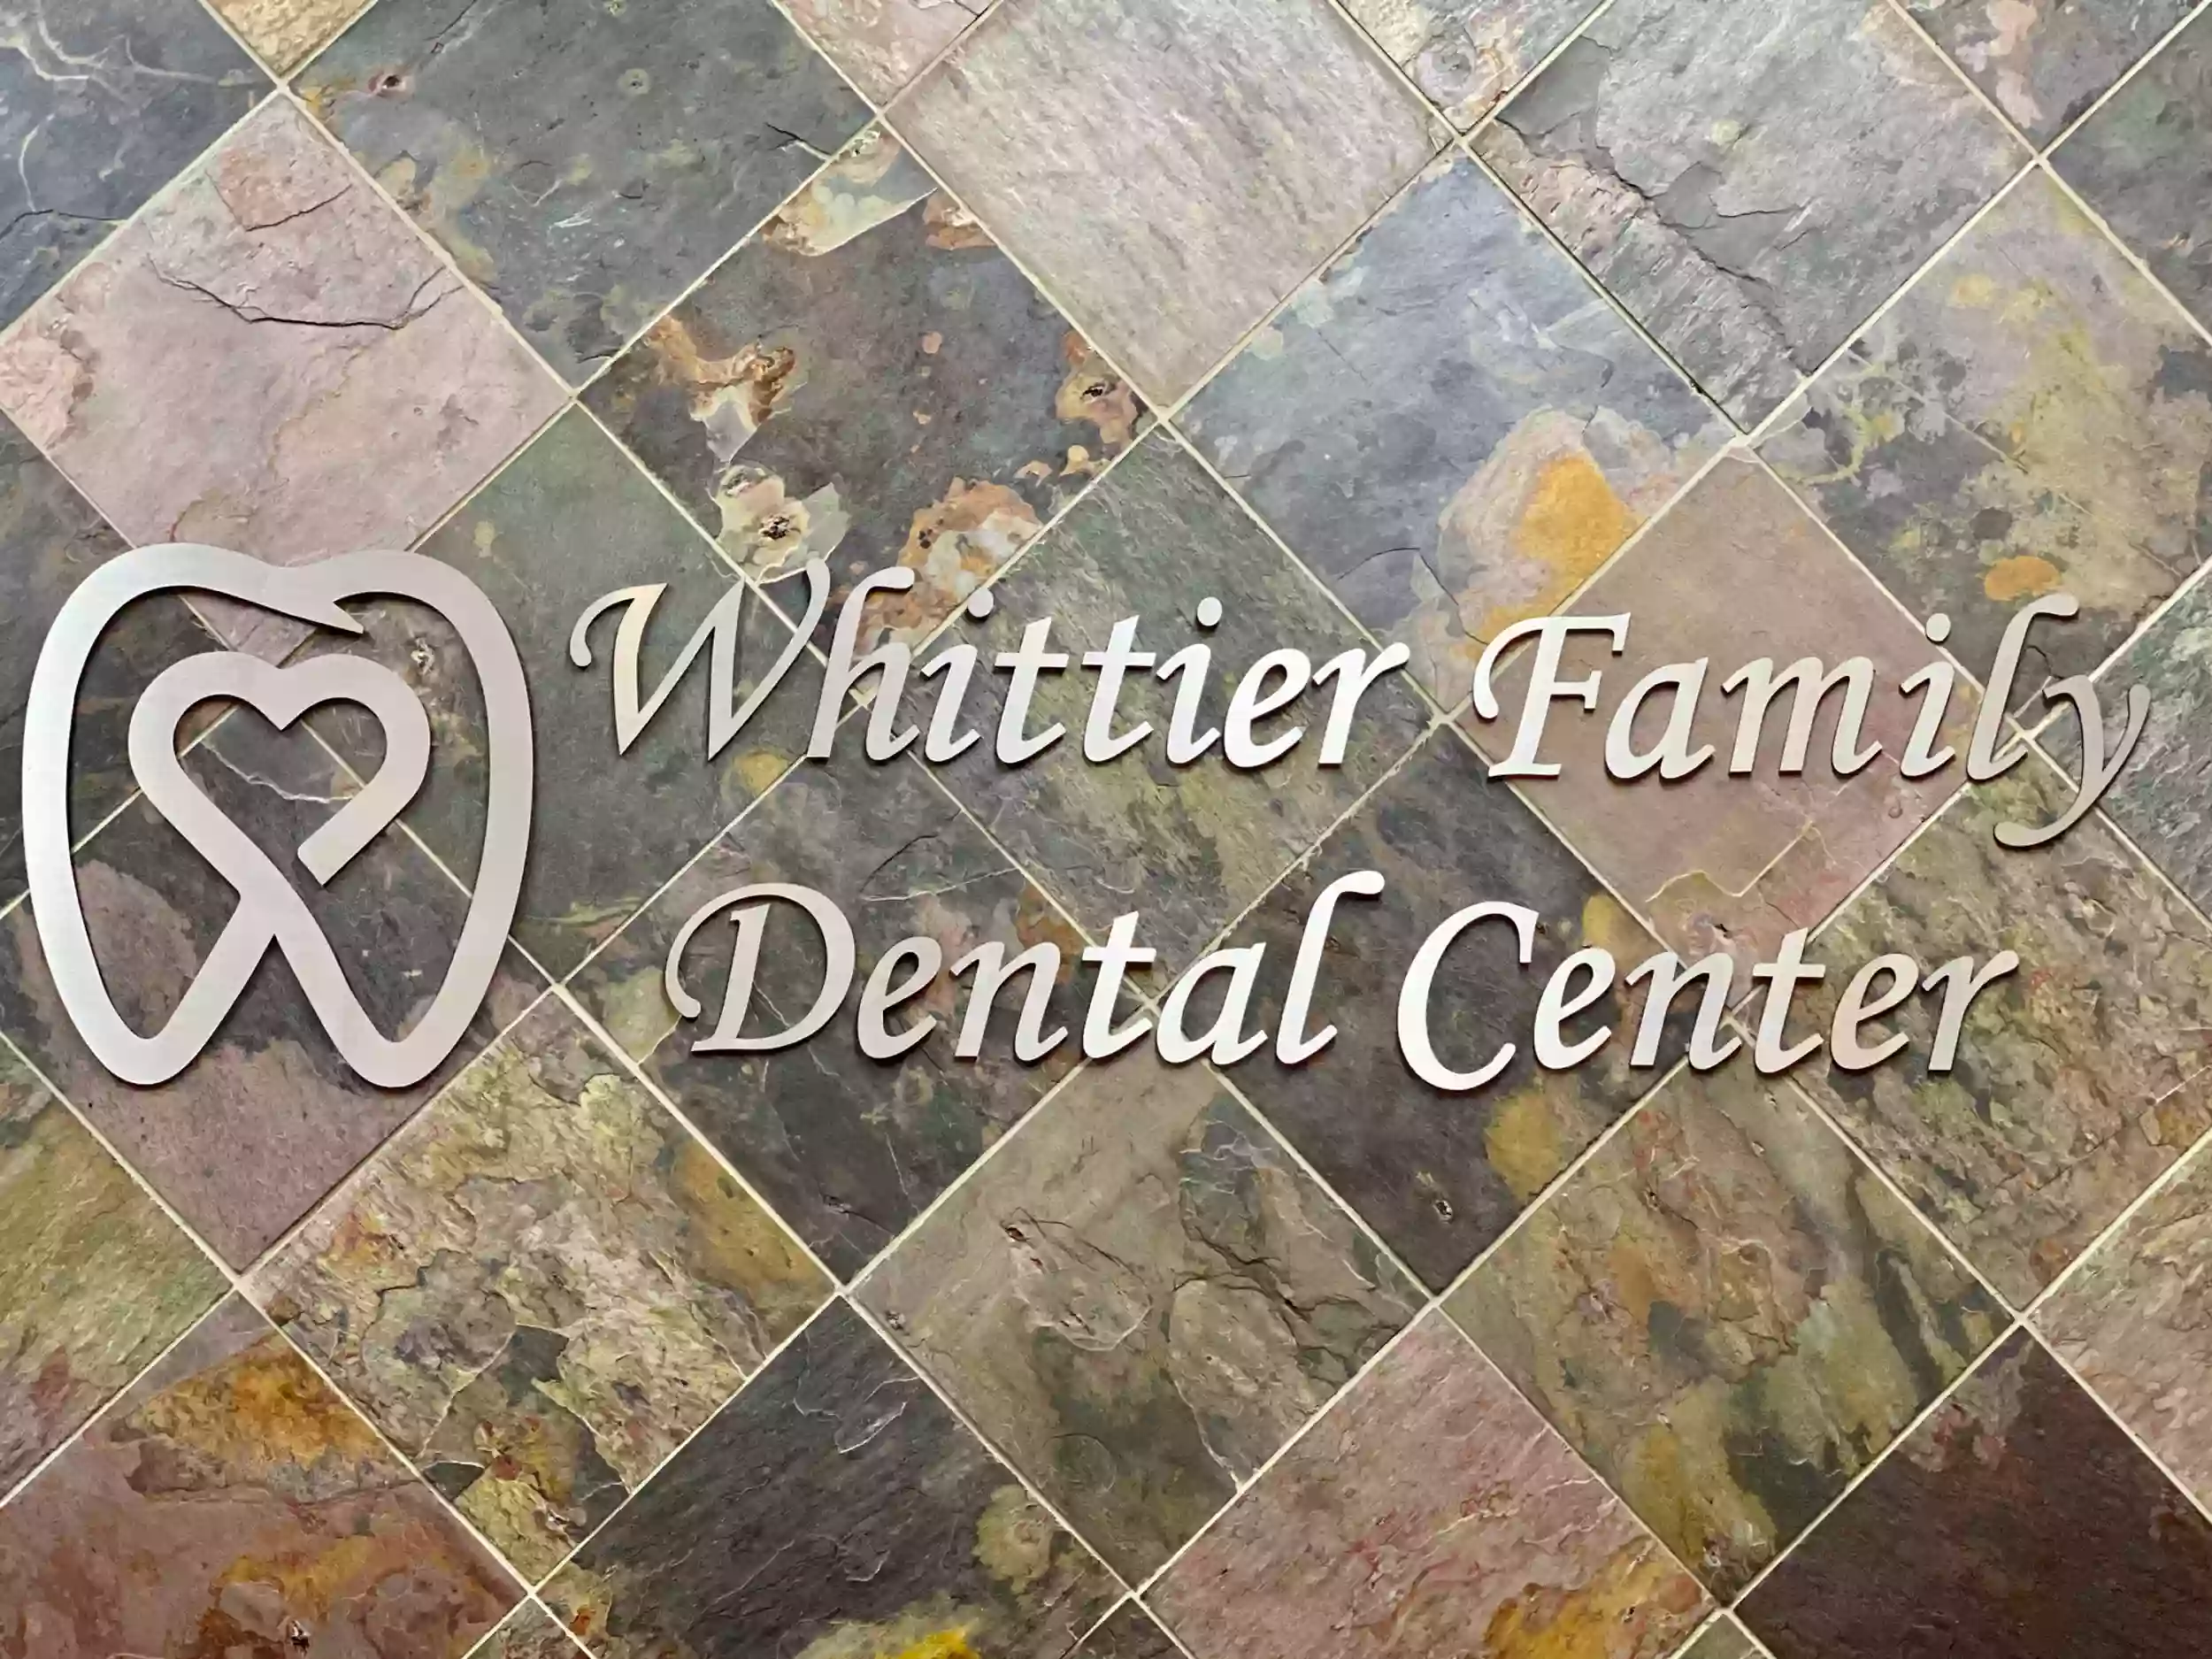 Whittier Family Dental Center